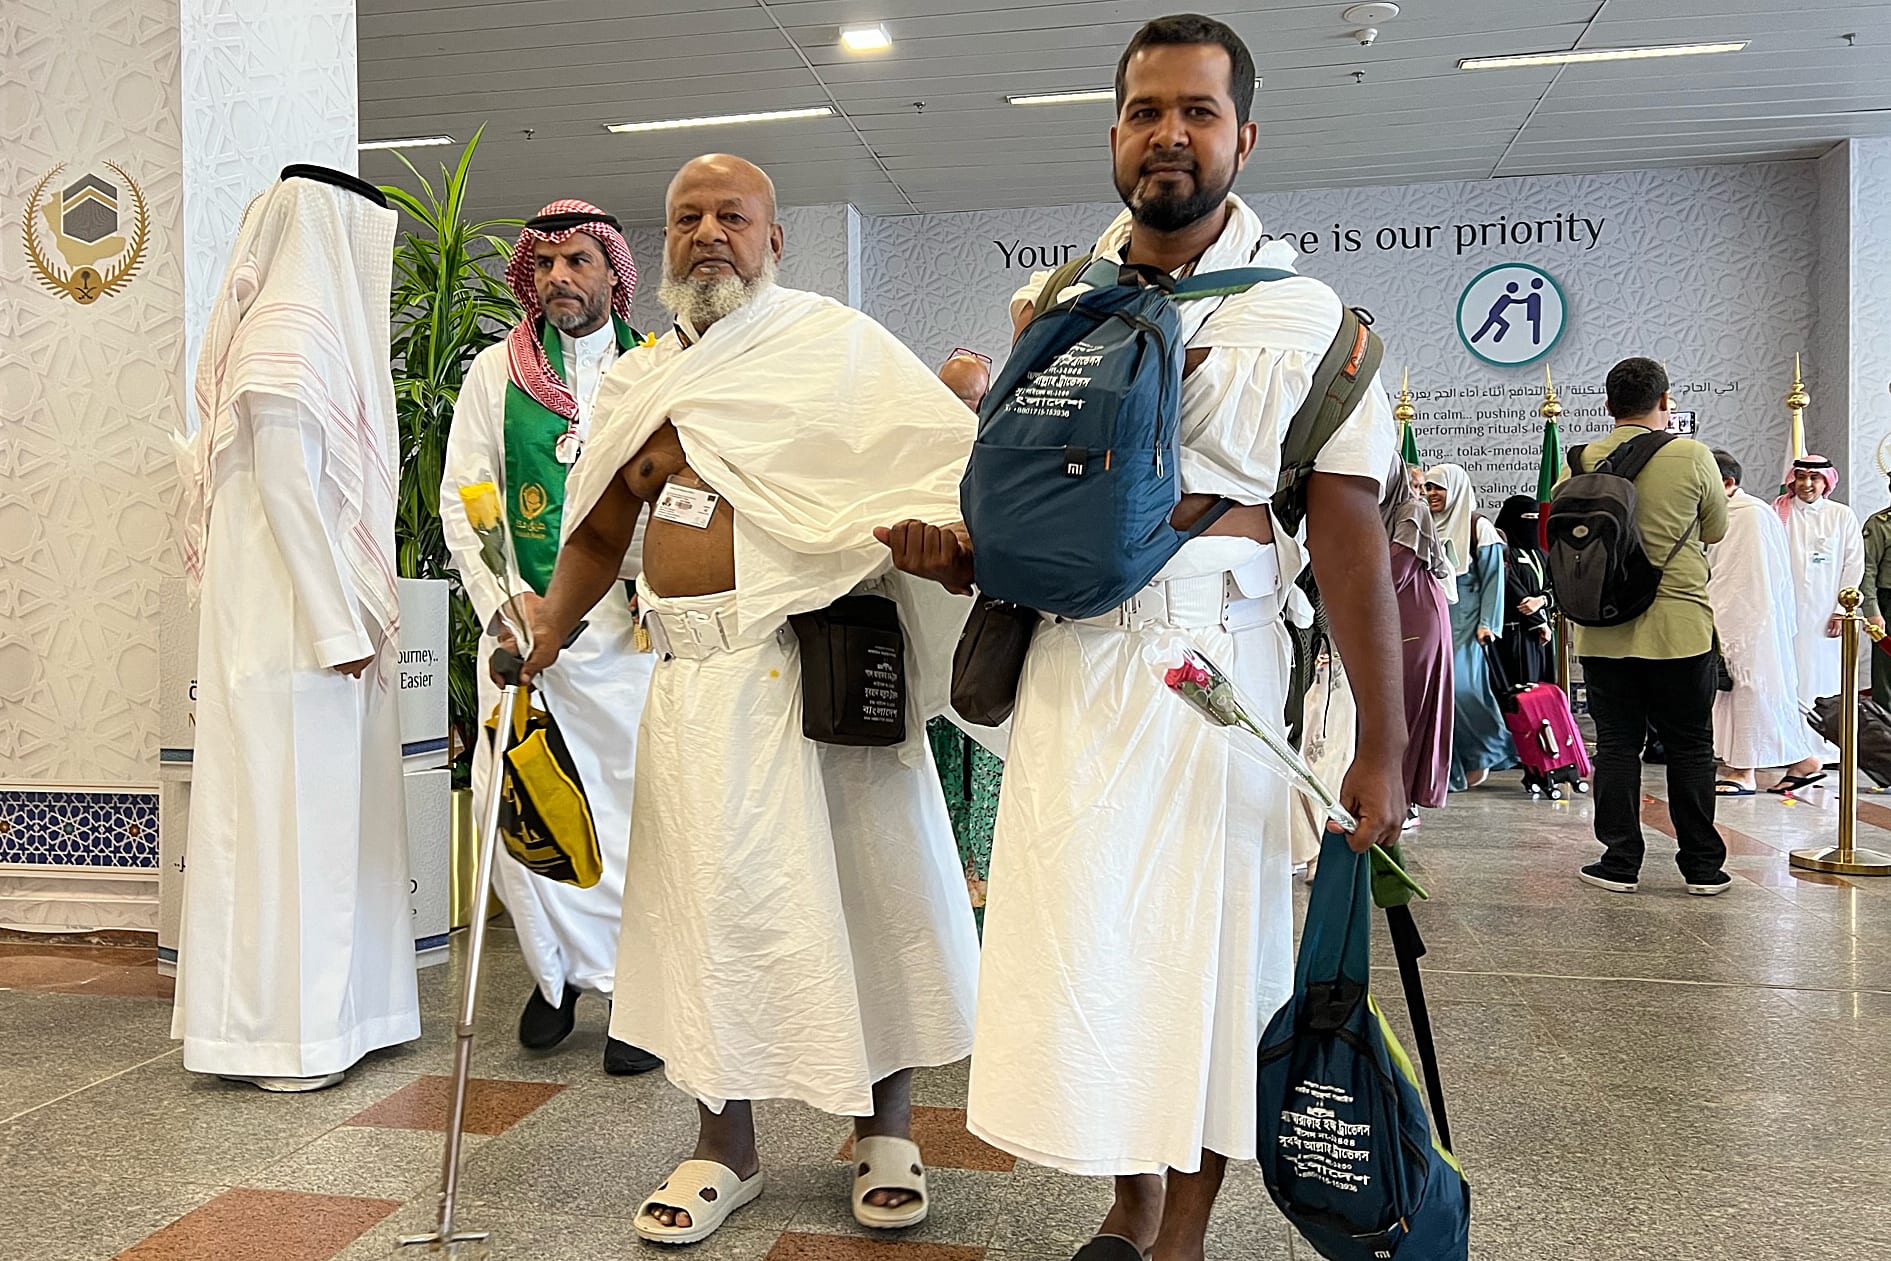 النيابة العامة السعودية توجه طلبا للمسافرين بشأن ما بحوزتهم من أموال ومعادن ثمينة